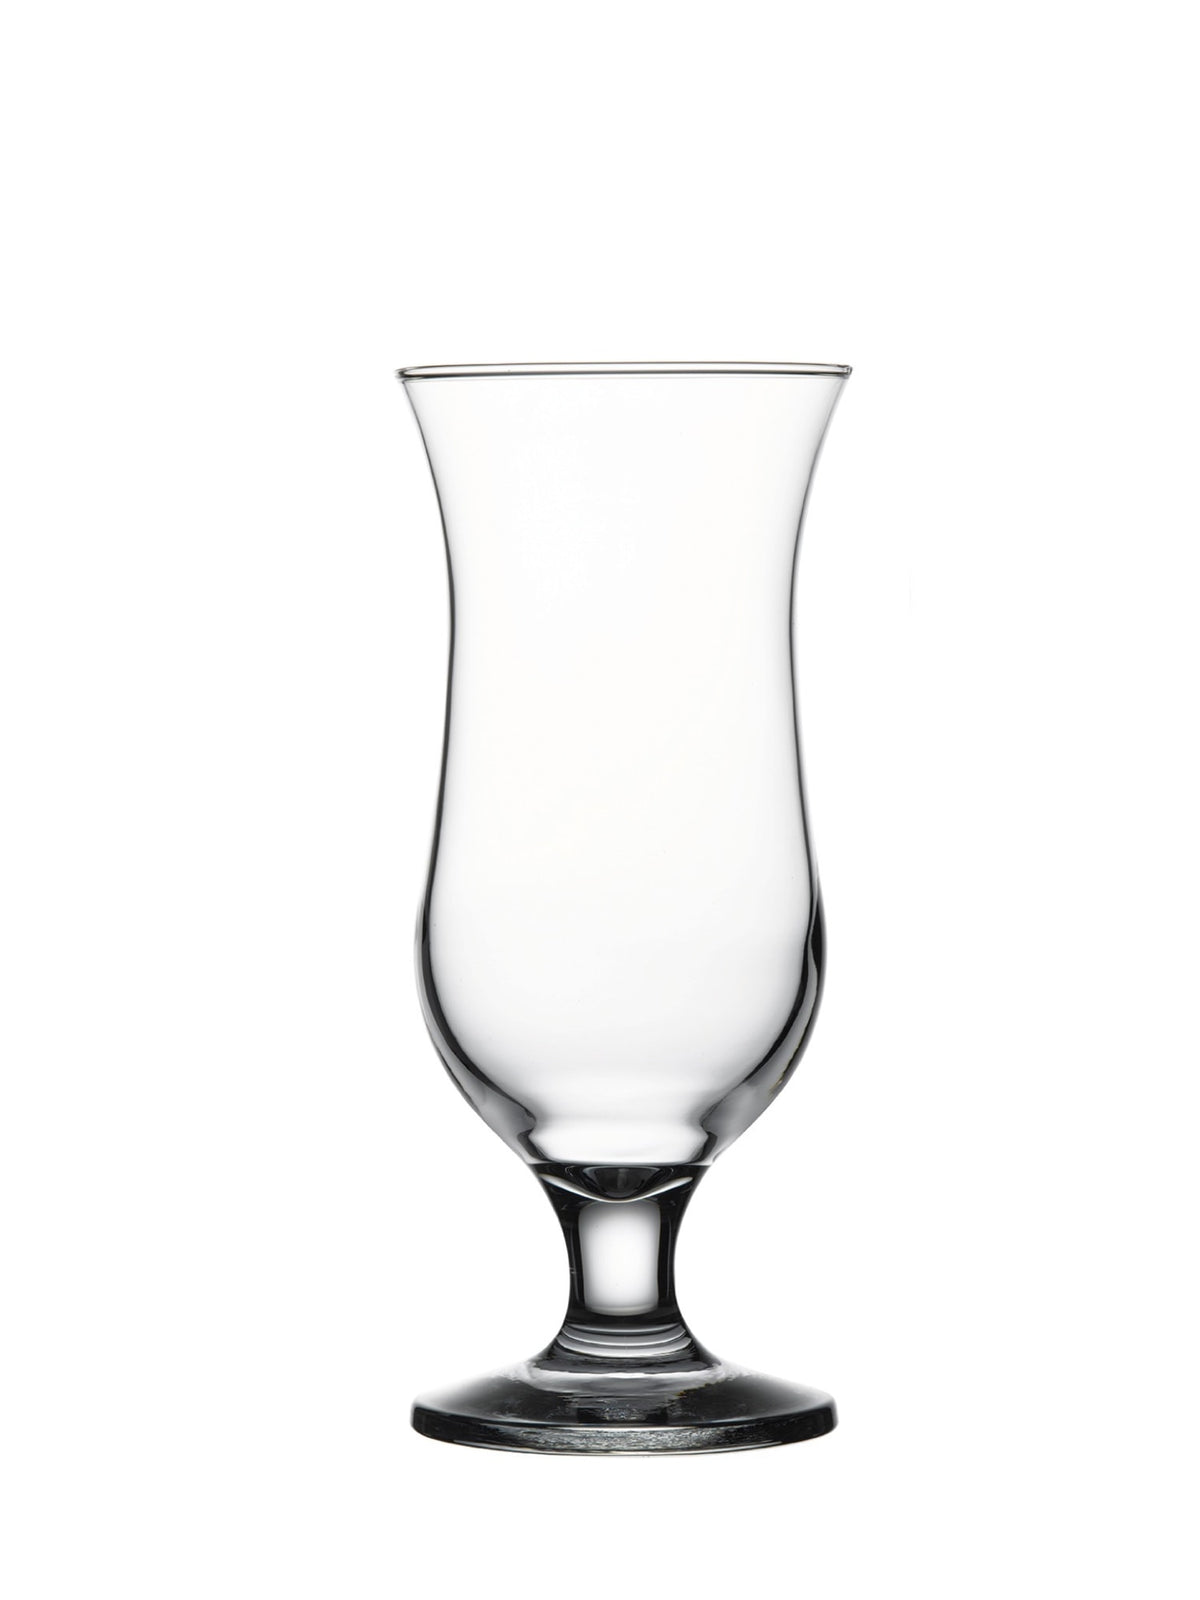 Fejr sæsonen med dette smukke cocktailglas.